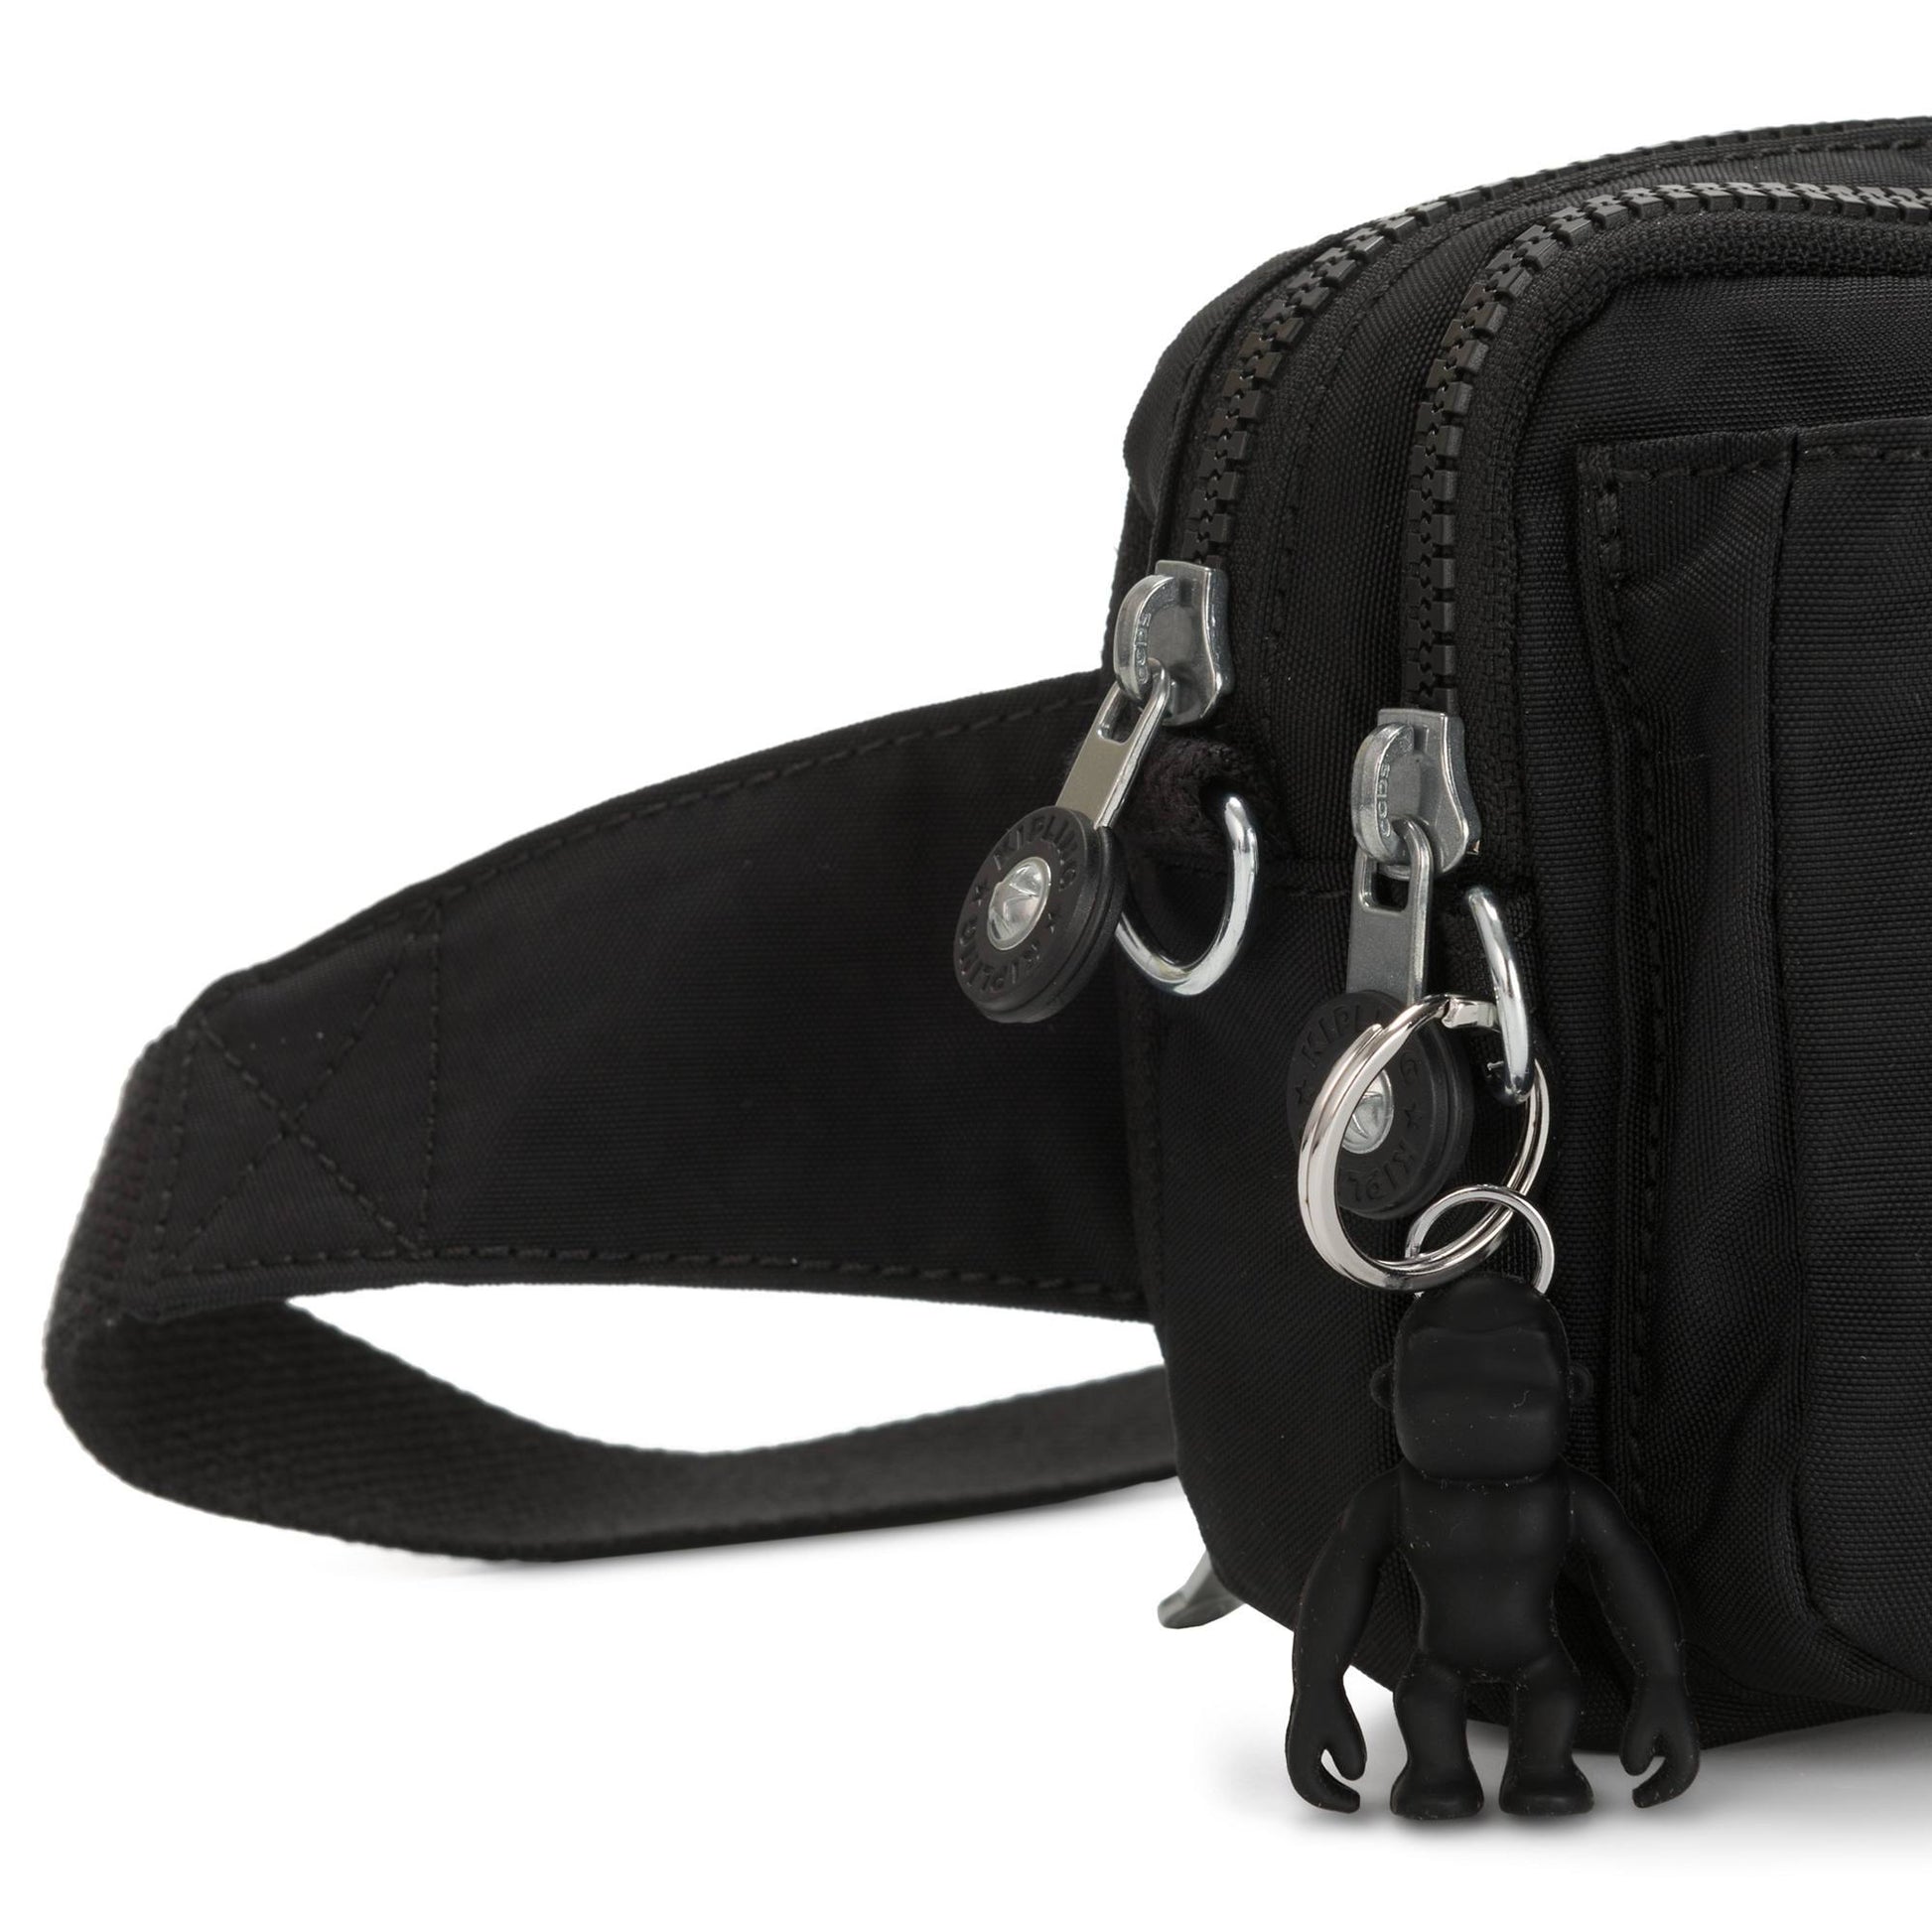 Kipling Abanu Multi Convertible Crossbody Bag - Black Noir 